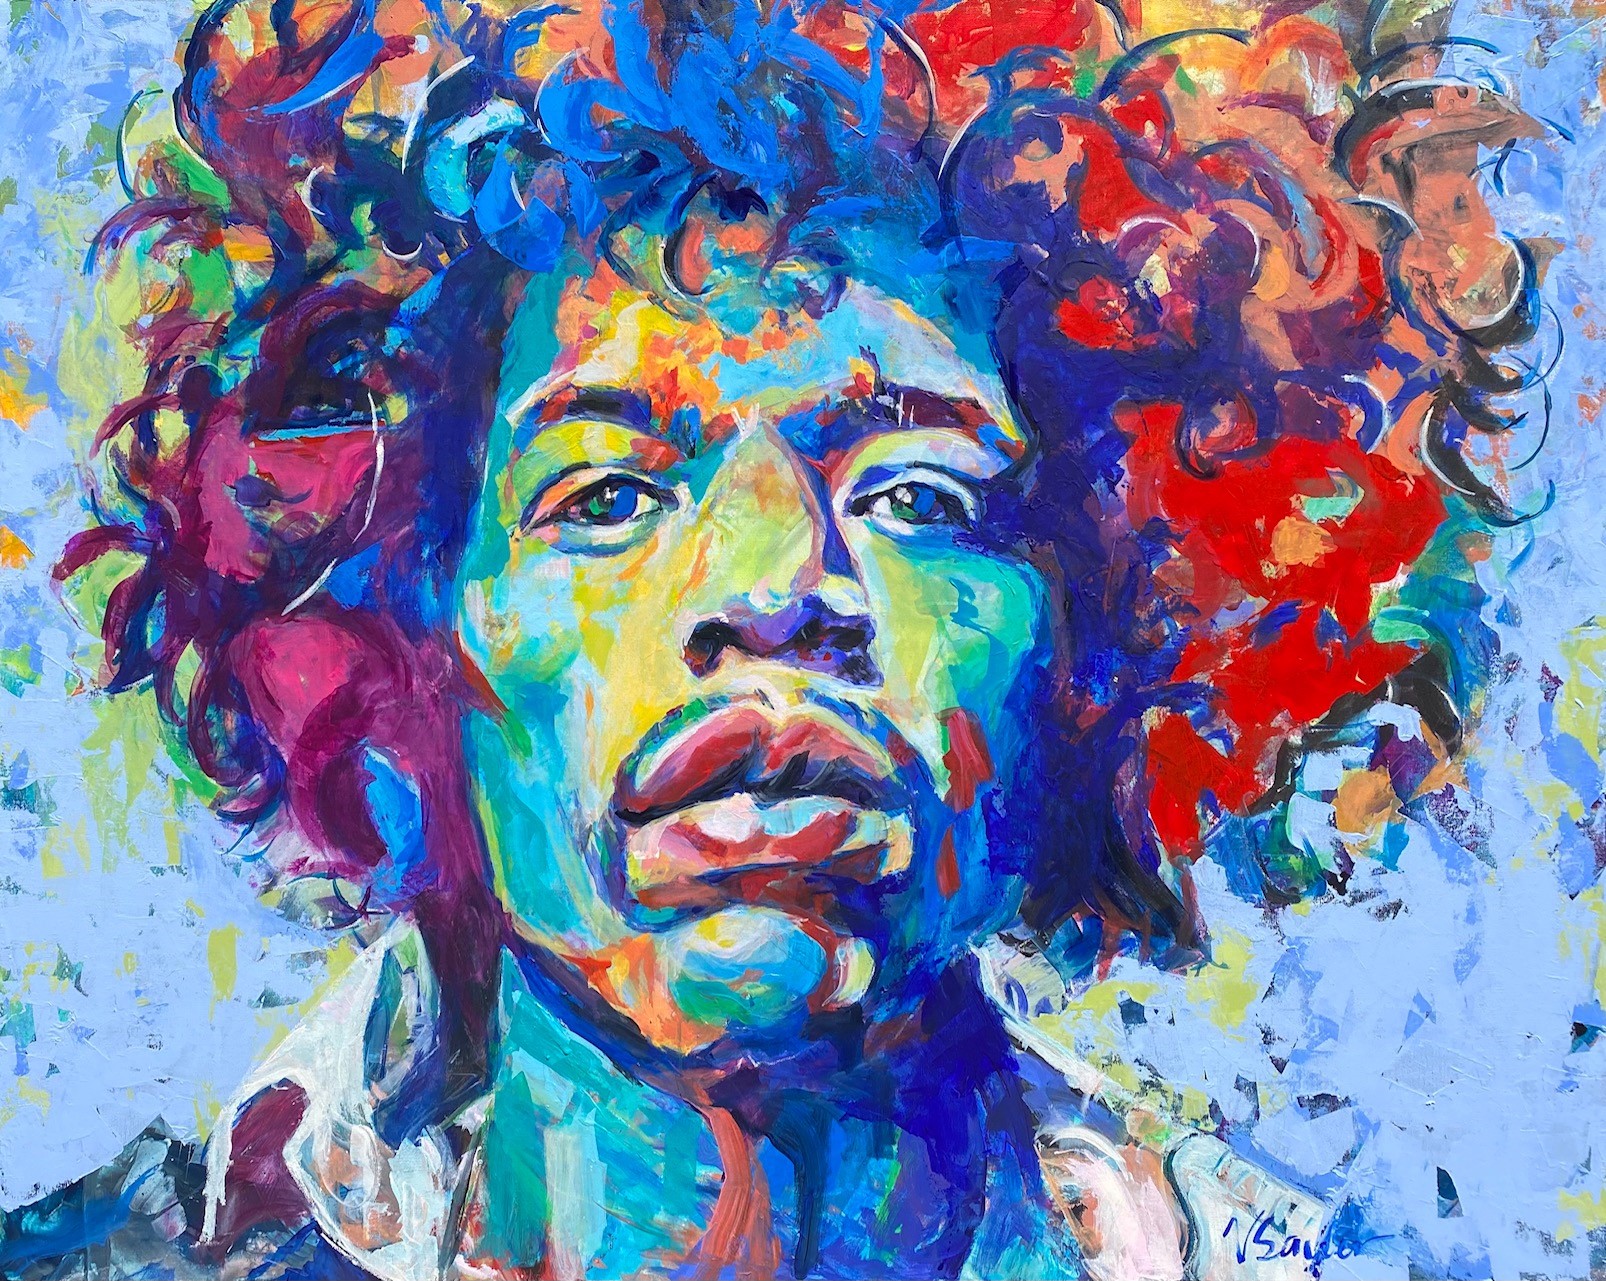 Jimi Hendrix VI